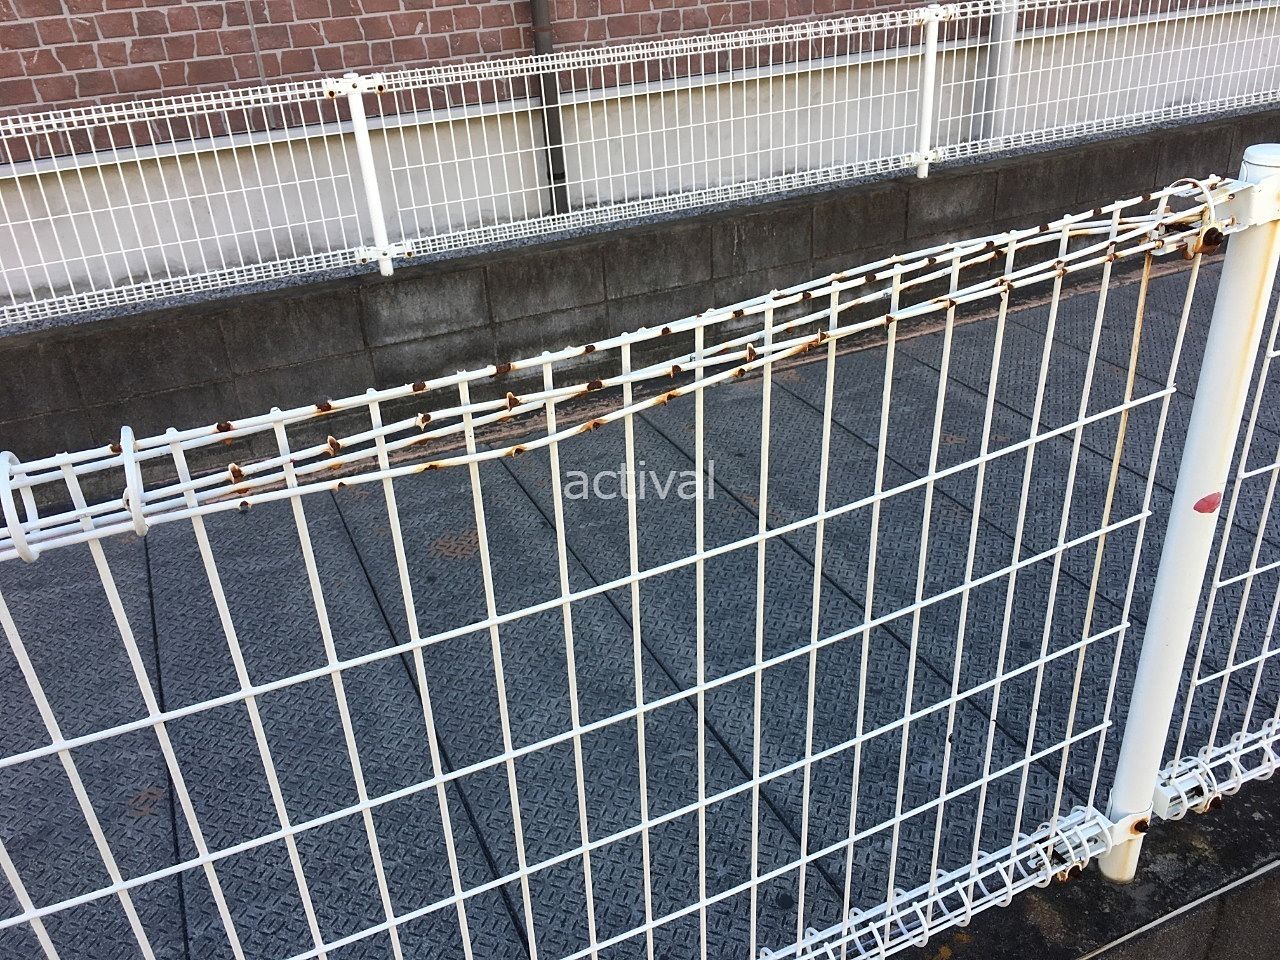 ア・ス・ヴェルデ駐車場のフェンスの網部分が劣化していました！